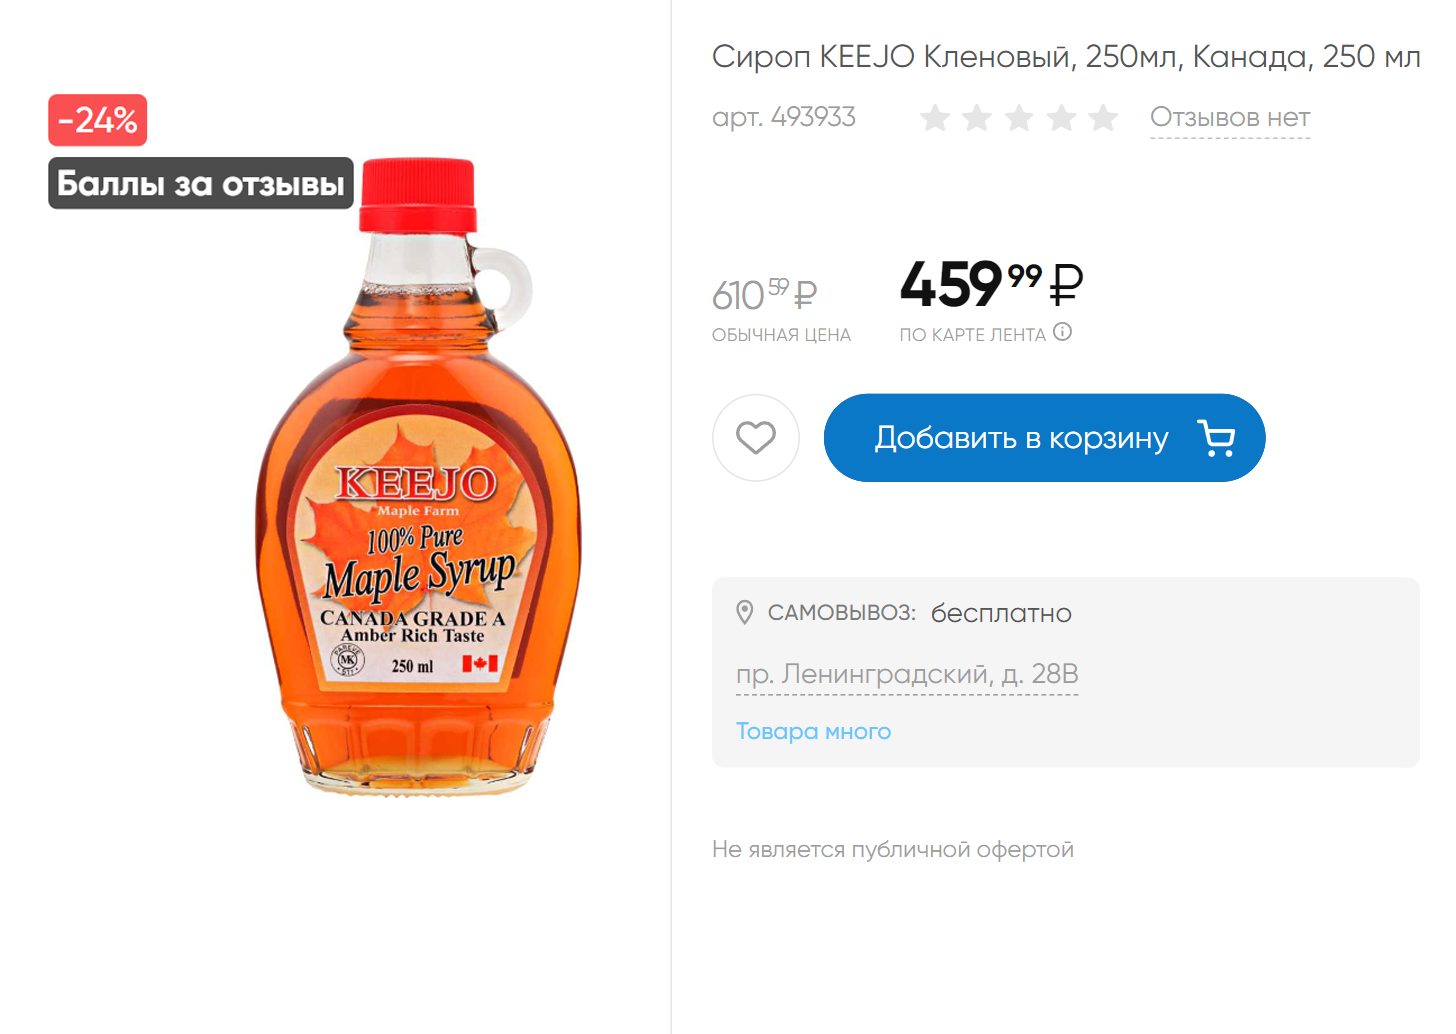 Настоящий кленовый сироп стоит недешево: больше 400 ₽ за 250 мл. Если видите литровую бутылку за 500 ₽, скорее всего, это сахарный сироп с ароматизатором. Источник: lenta.com